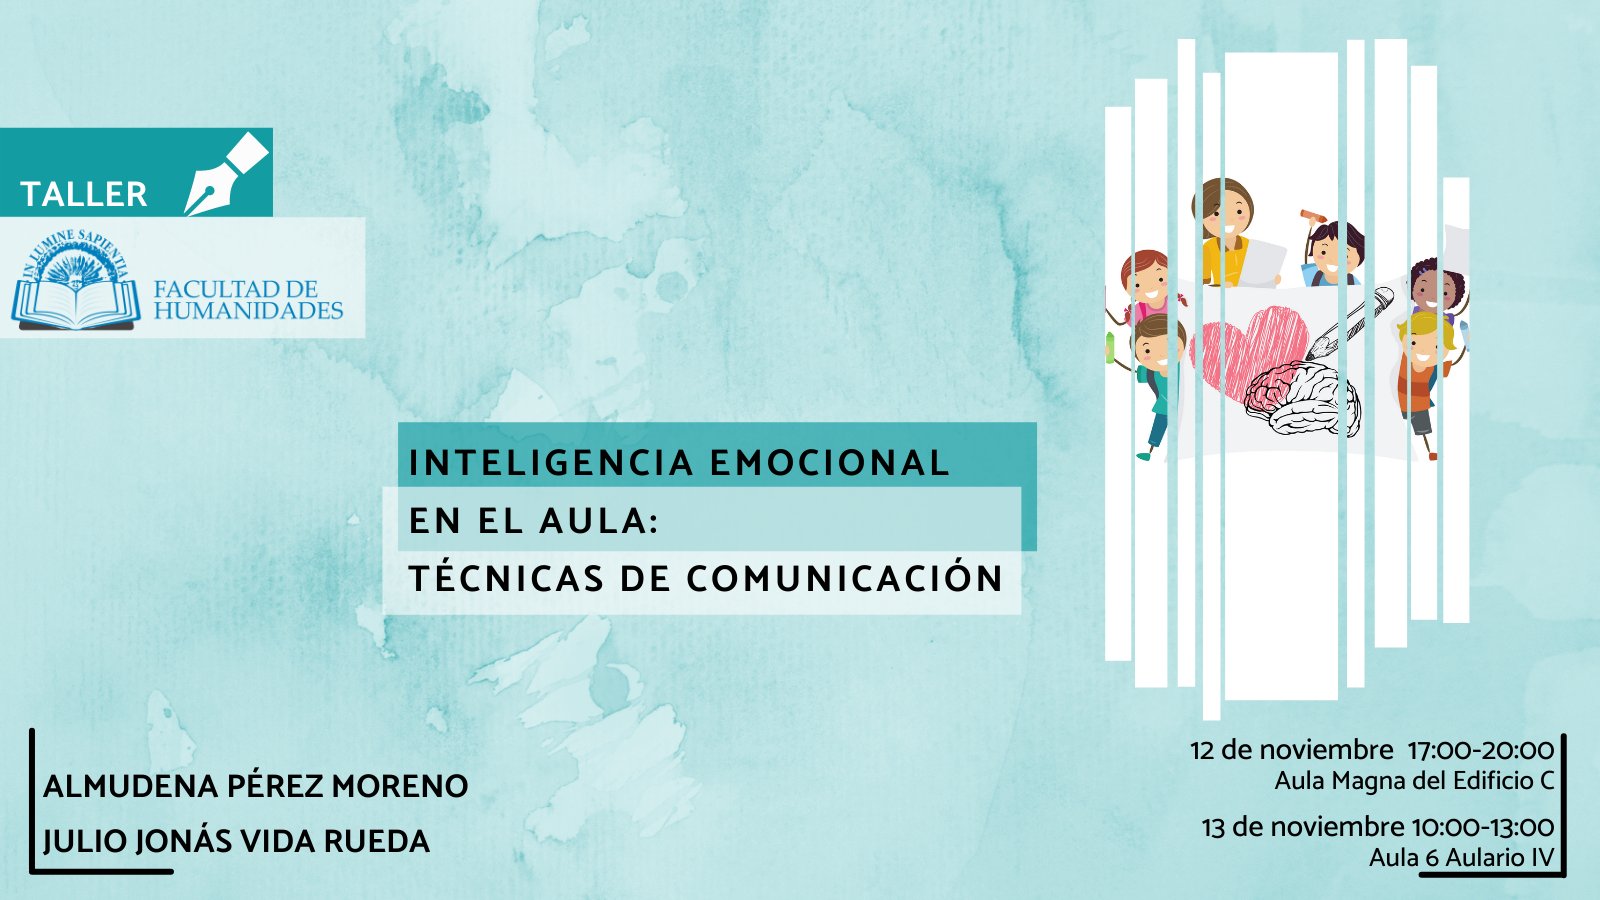 La Facultad de Humanidades, Almudena Pérez Moreno y Julio Jonás Vida Rueda organizan la actividad titulada ‘Inteligencia Emocional en el aula: Técnicas de Comunicación’.